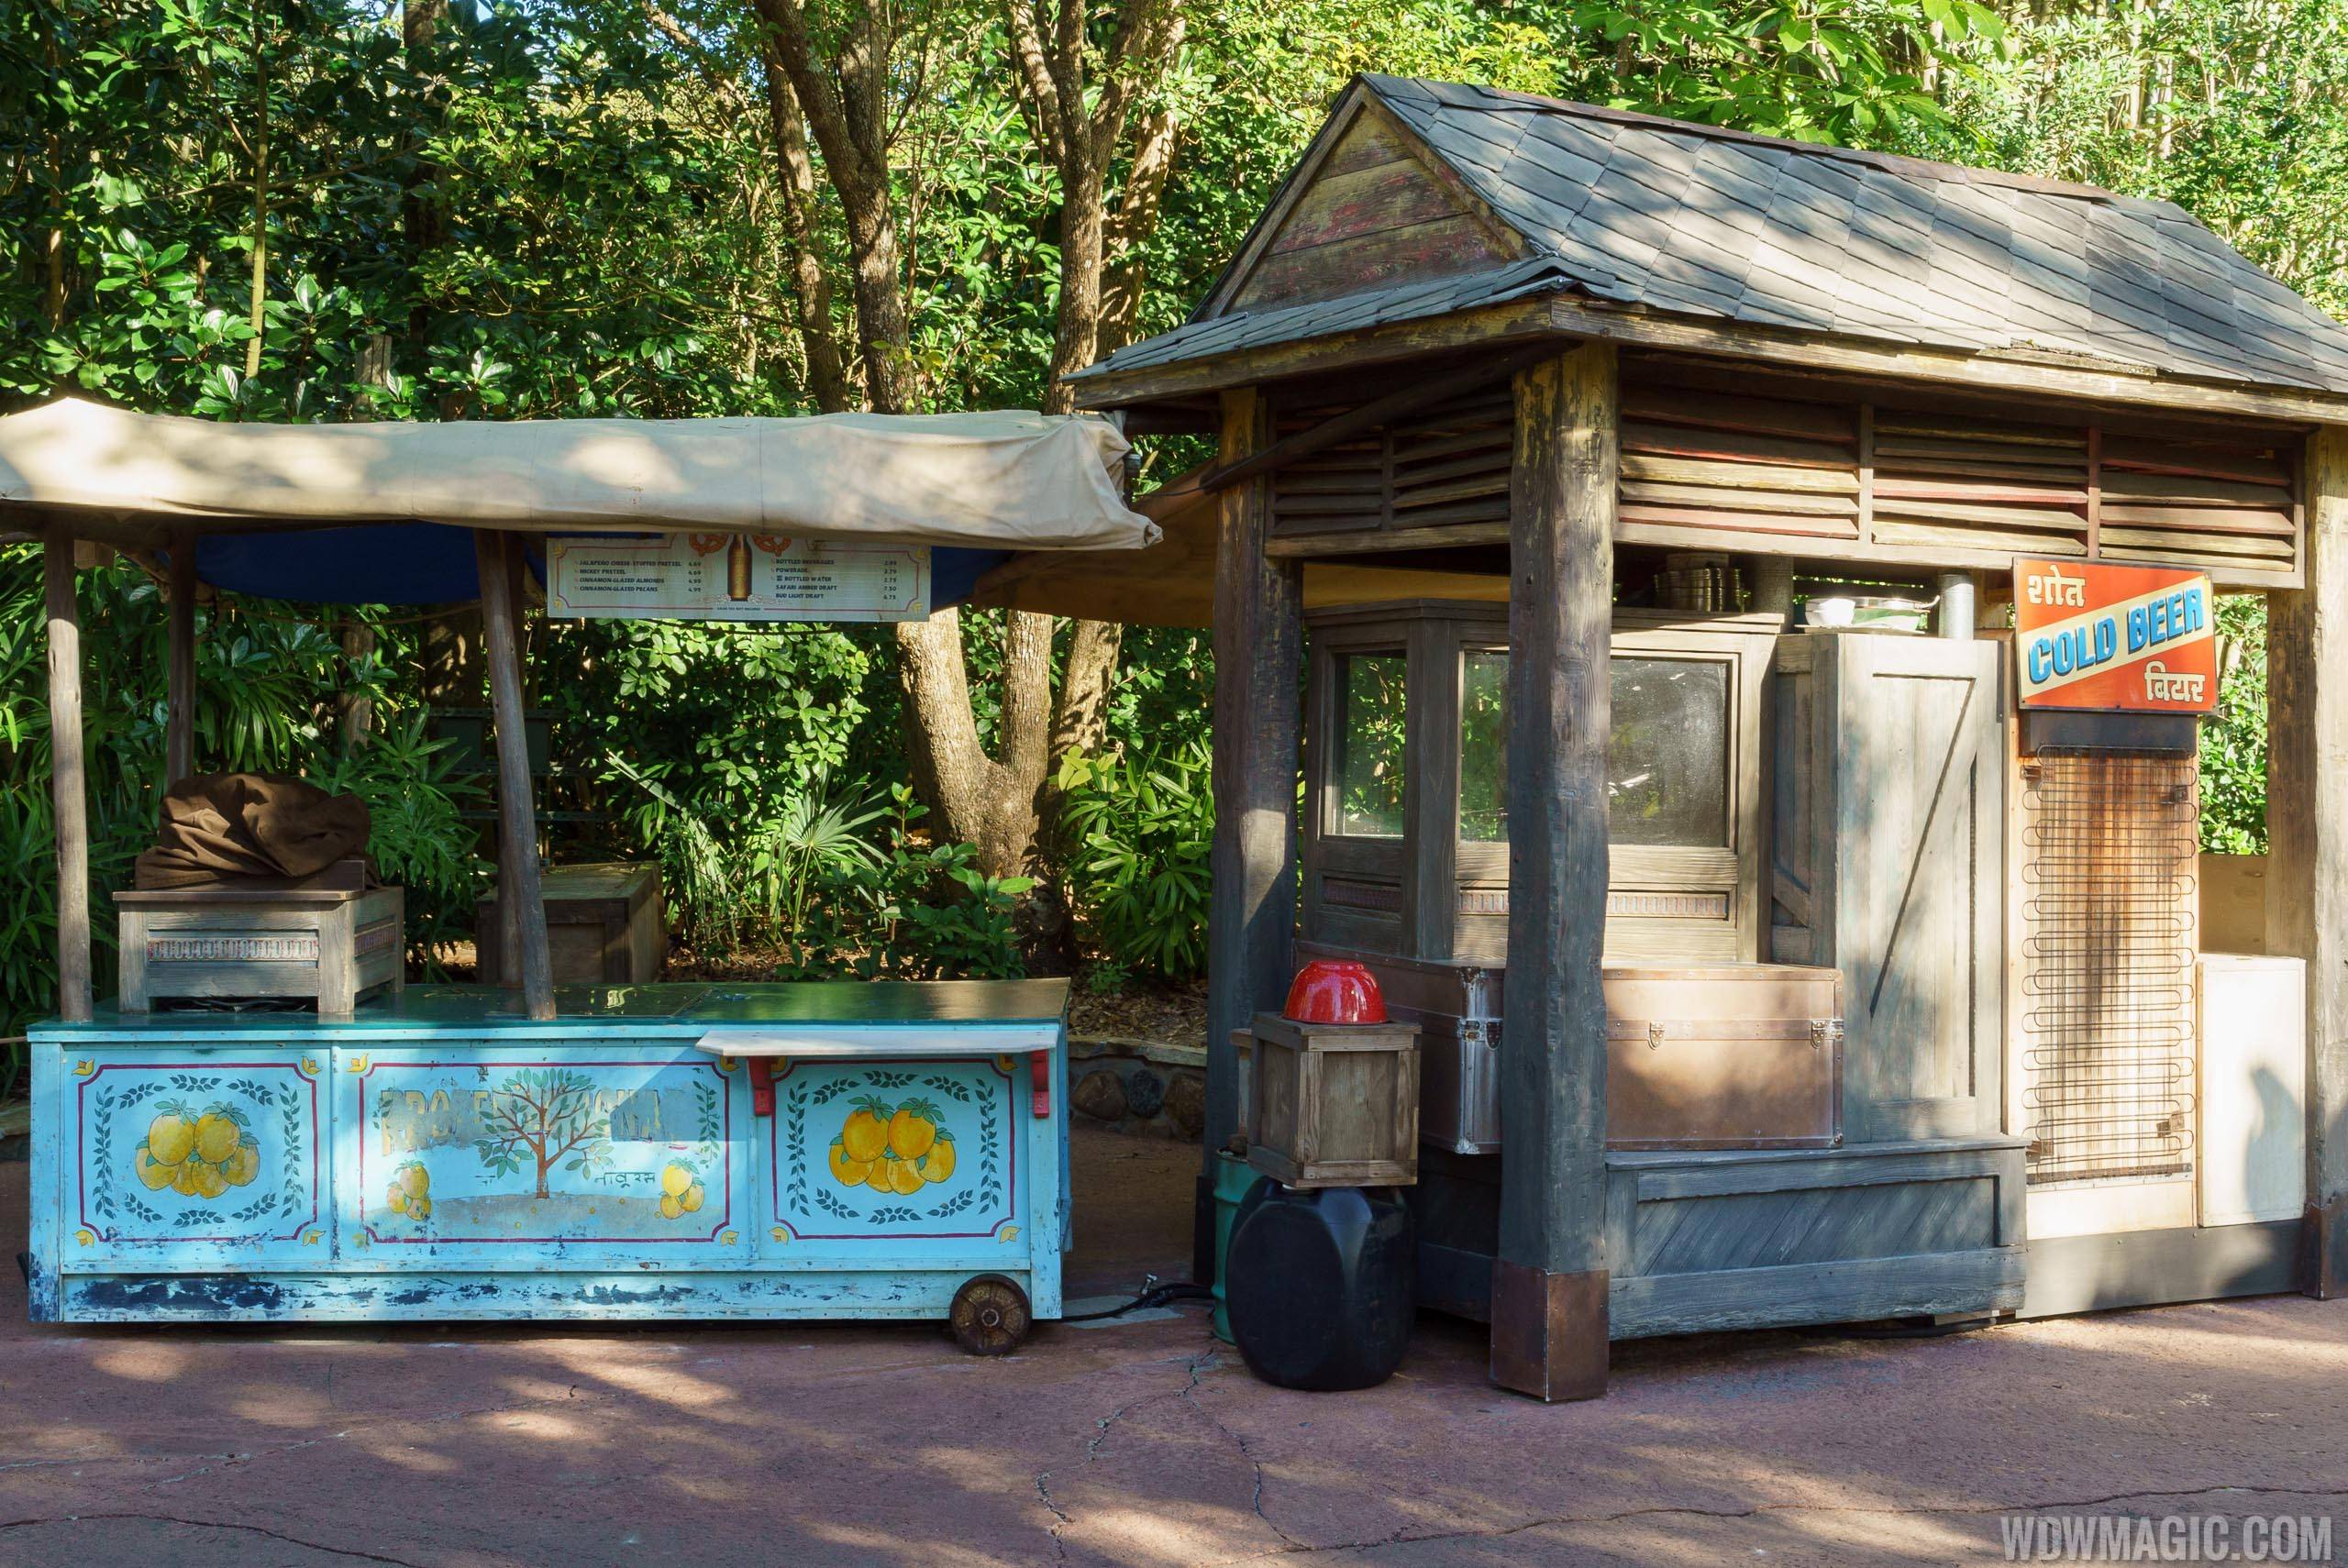 New look snack kiosks at Disney's Animal Kingdom